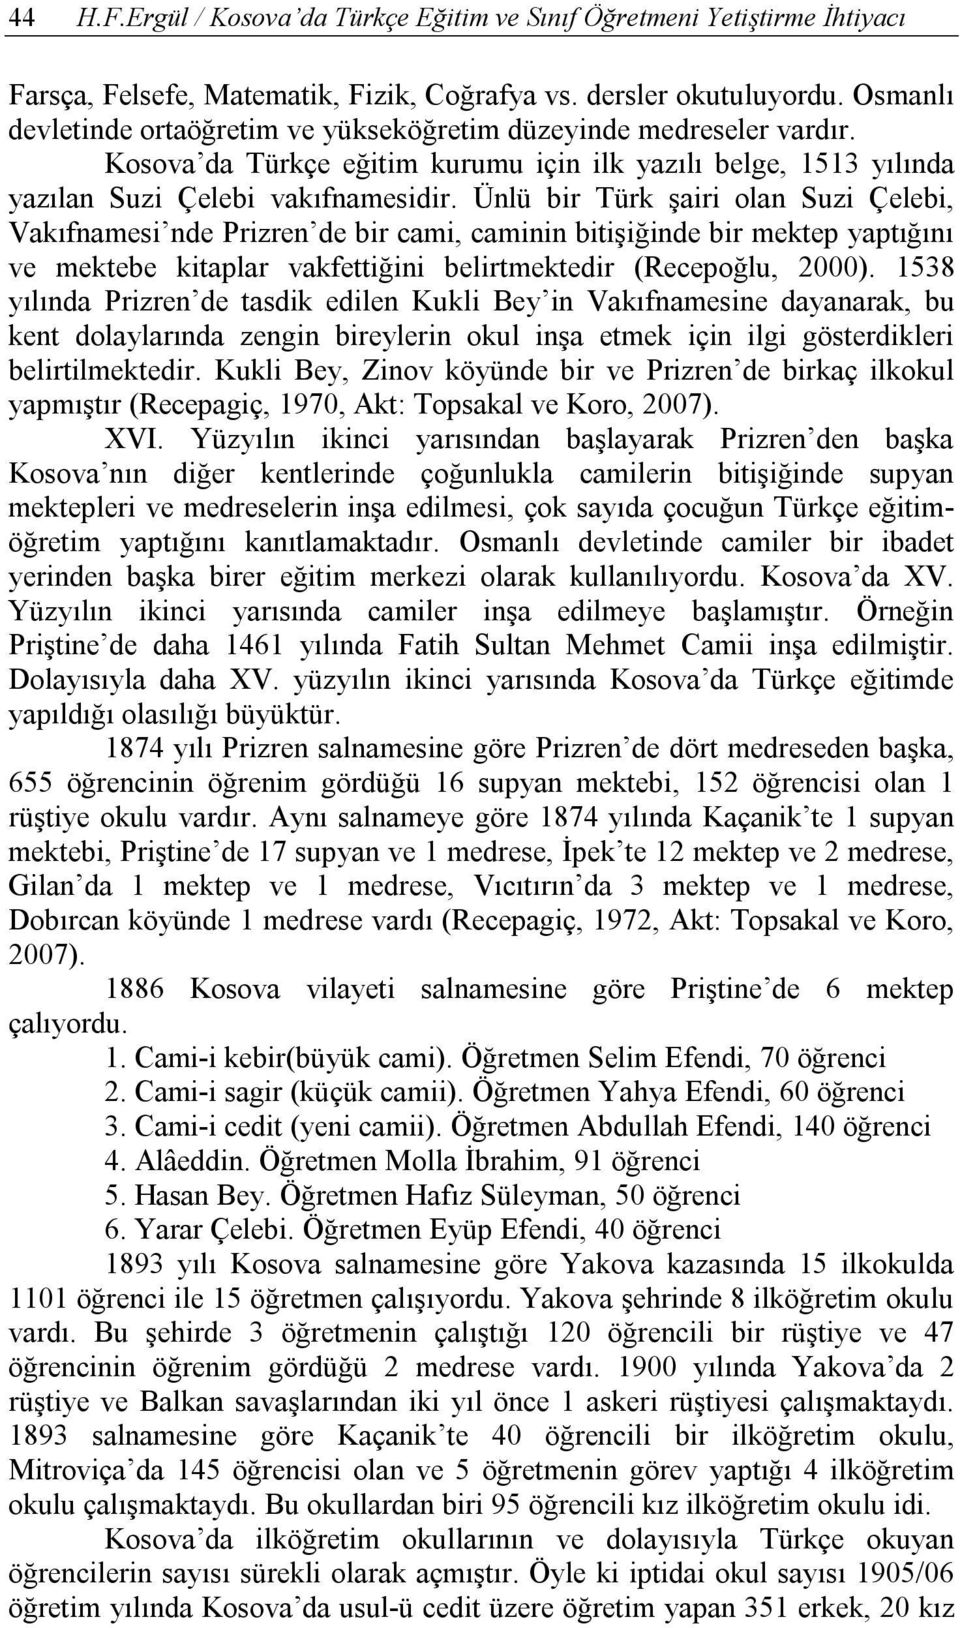 Ünlü bir Türk şairi olan Suzi Çelebi, Vakıfnamesi nde Prizren de bir cami, caminin bitişiğinde bir mektep yaptığını ve mektebe kitaplar vakfettiğini belirtmektedir (Recepoğlu, 2000).